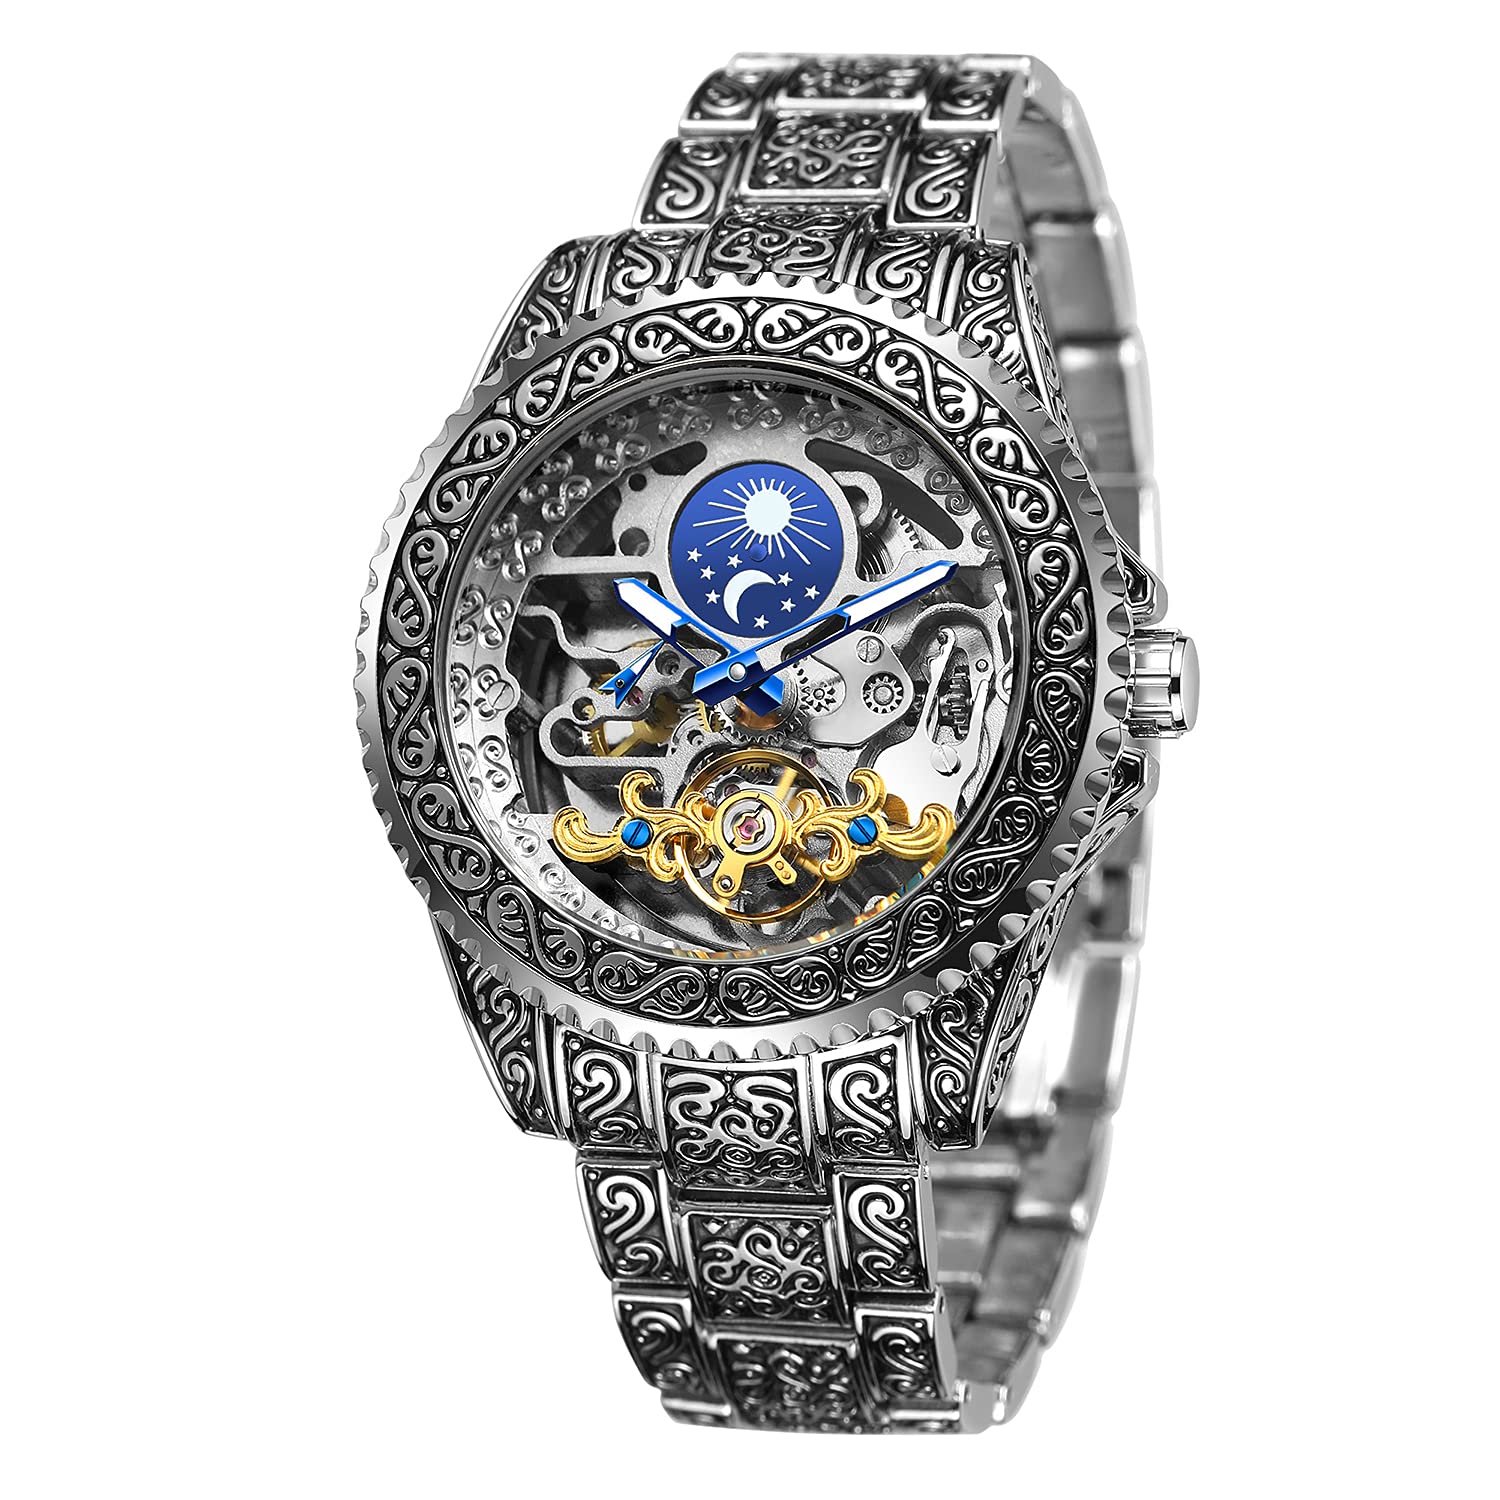 Retro Geschnitzt Skelett Steampunk Automatik Armbanduhr Goldene Silber Herren Uhr mit Metallarmband AM/PM Sonne Mond Geschenke für Manner